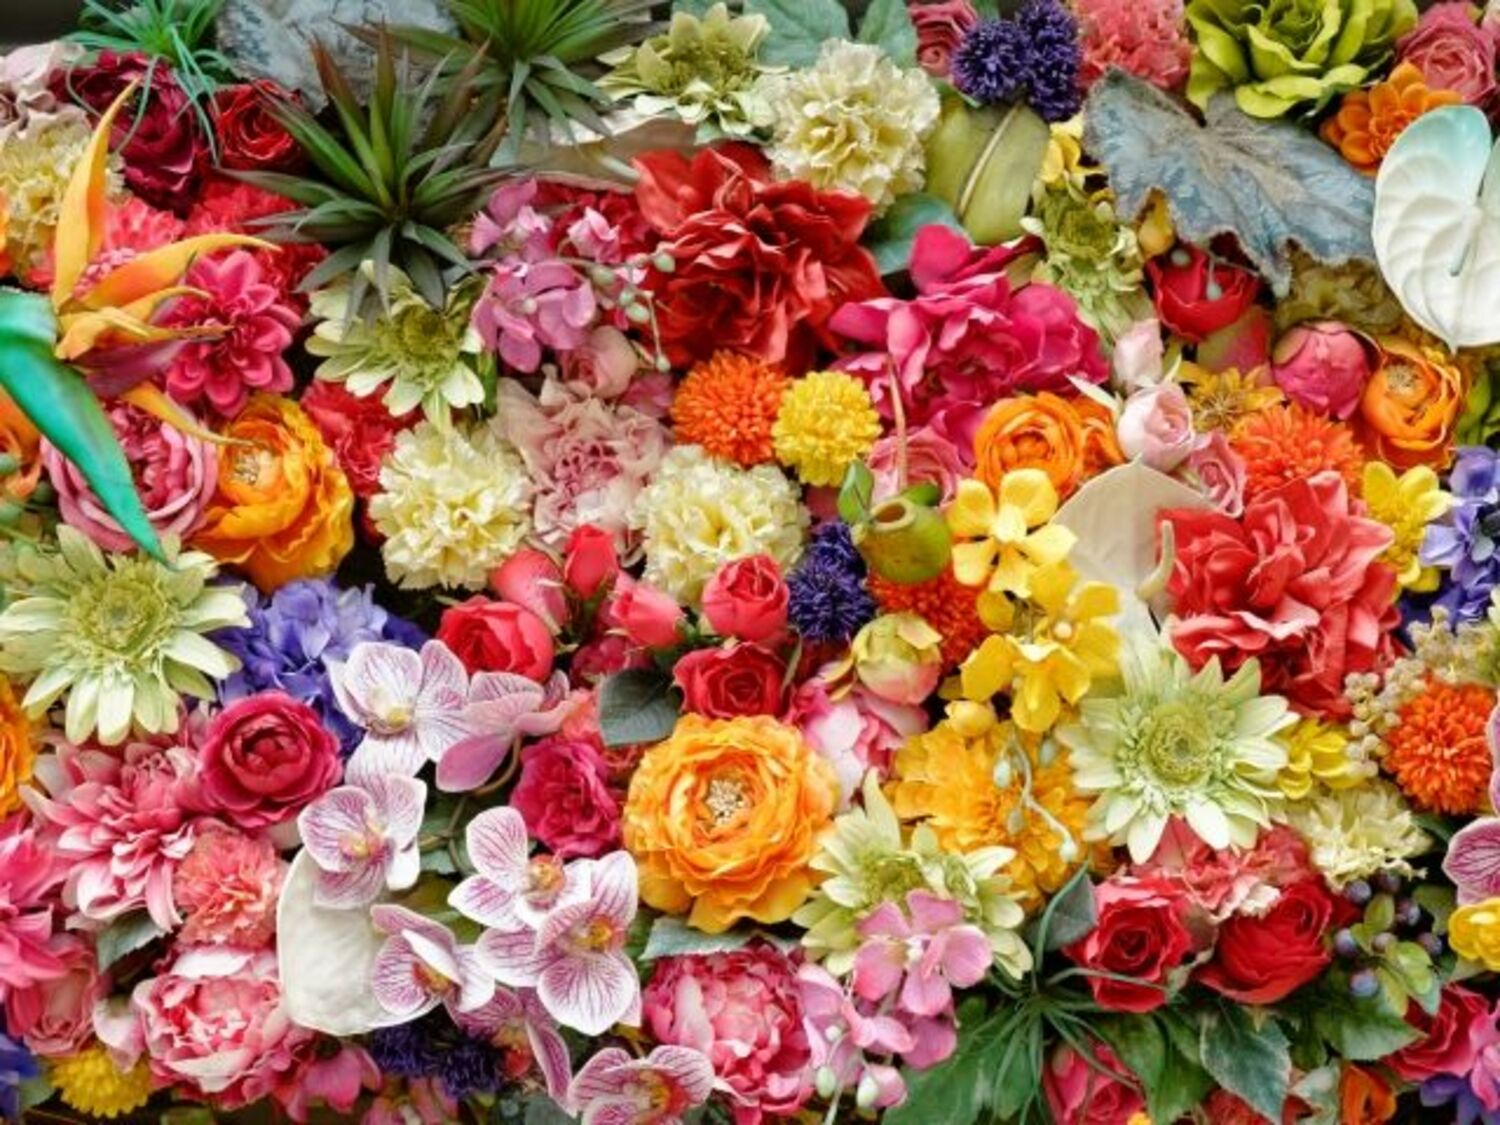 大林宣彦監督のSMAP『世界に一つだけの花』にまつわるエピソードに、稲垣吾郎も感動の画像